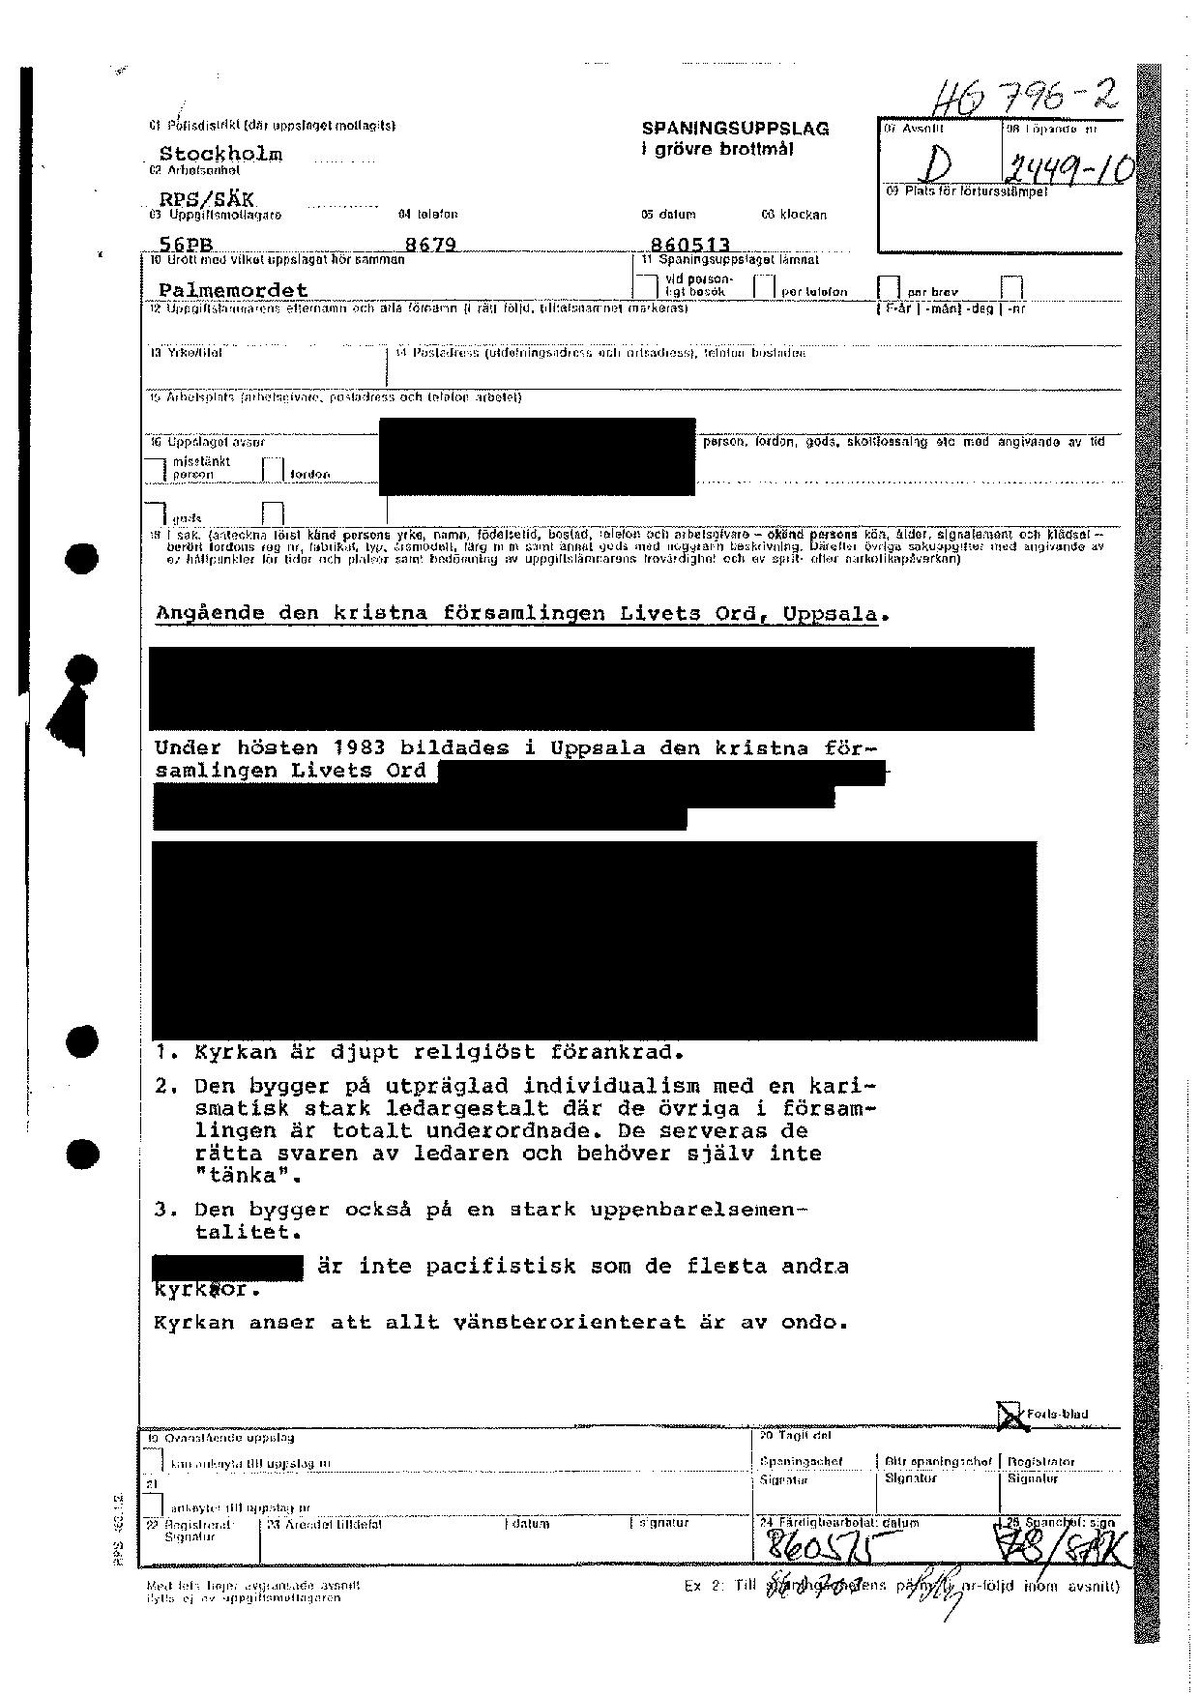 Pol-1986-05-13 HG796-02 Religiösa-högerextrema-sekter.pdf